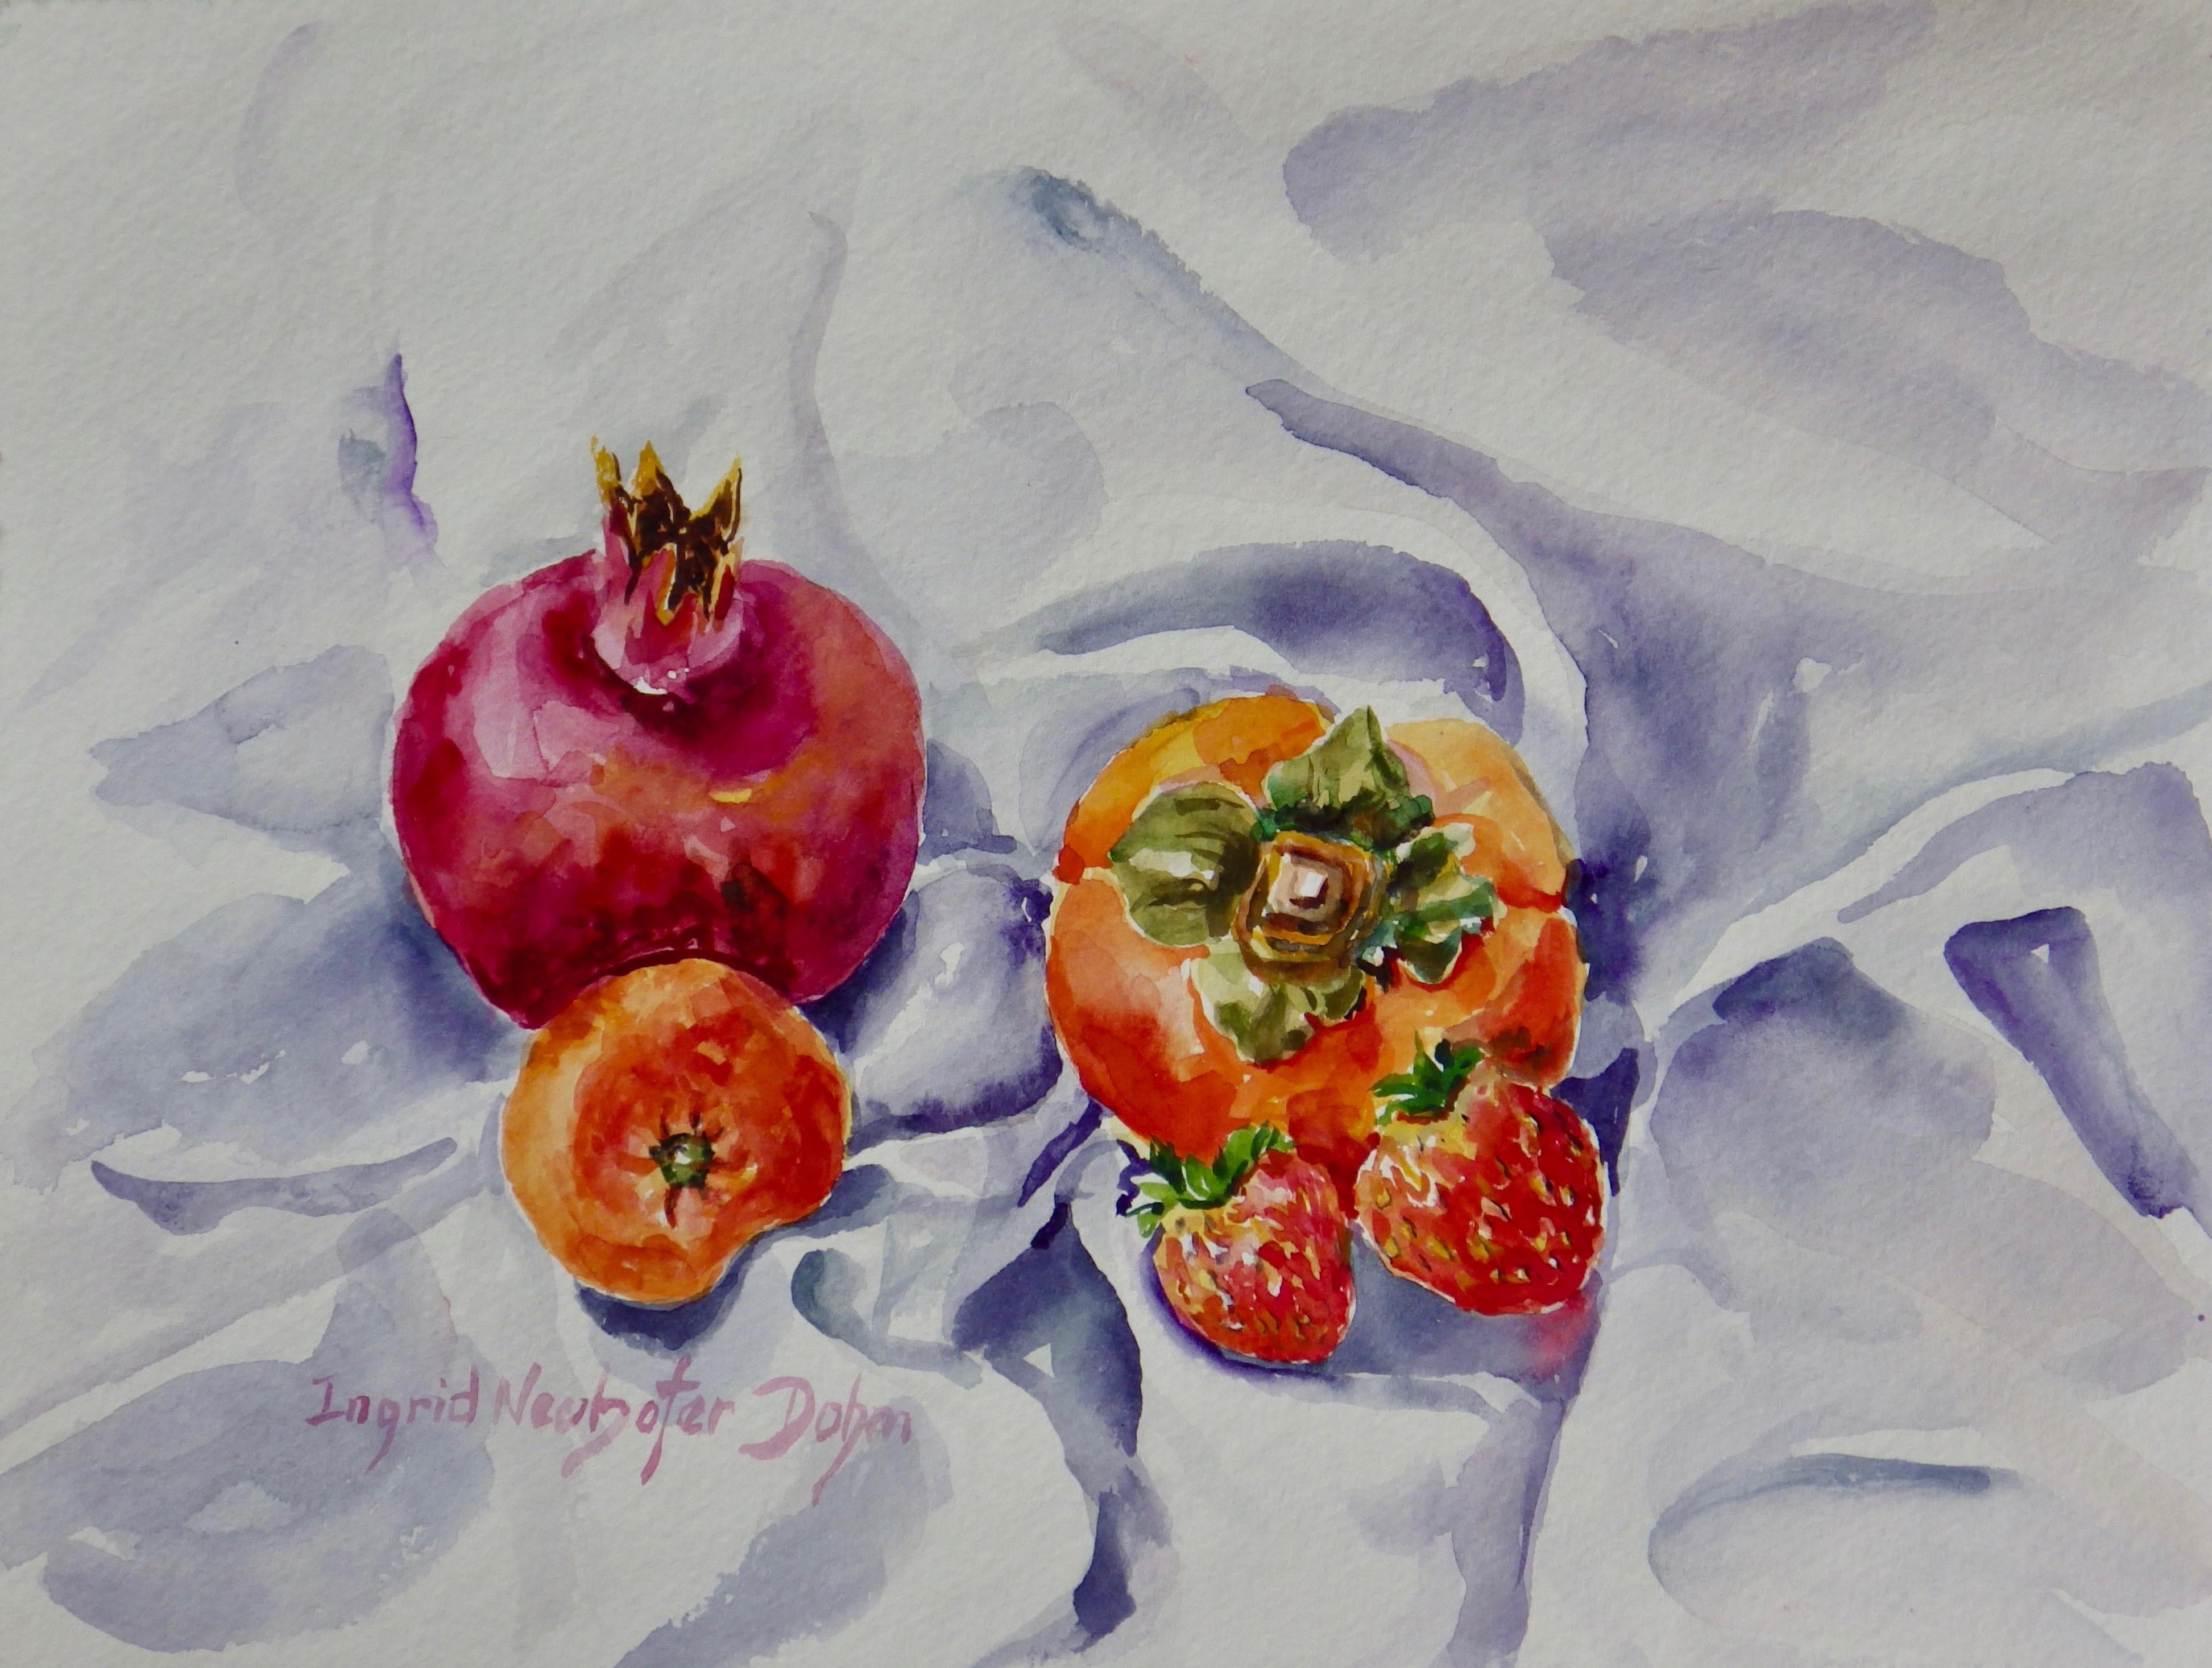 Nature morte originale de fraises, étude originale signée de fruits, aquarelle sur papier - Art de Ingrid Dohm